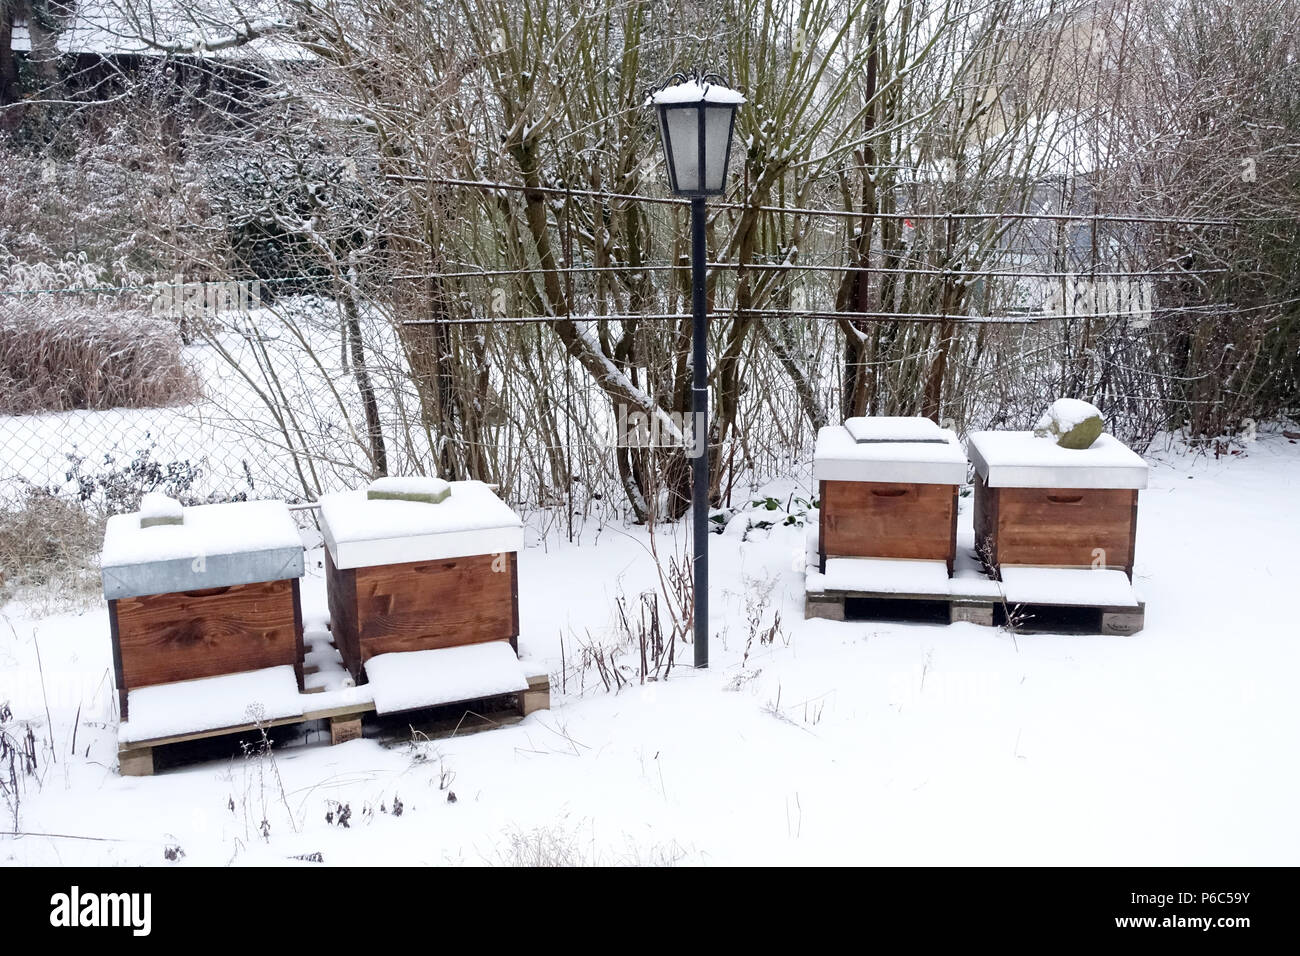 Berlin, Germany - Bees hunt in winter in a snowy garden Stock Photo